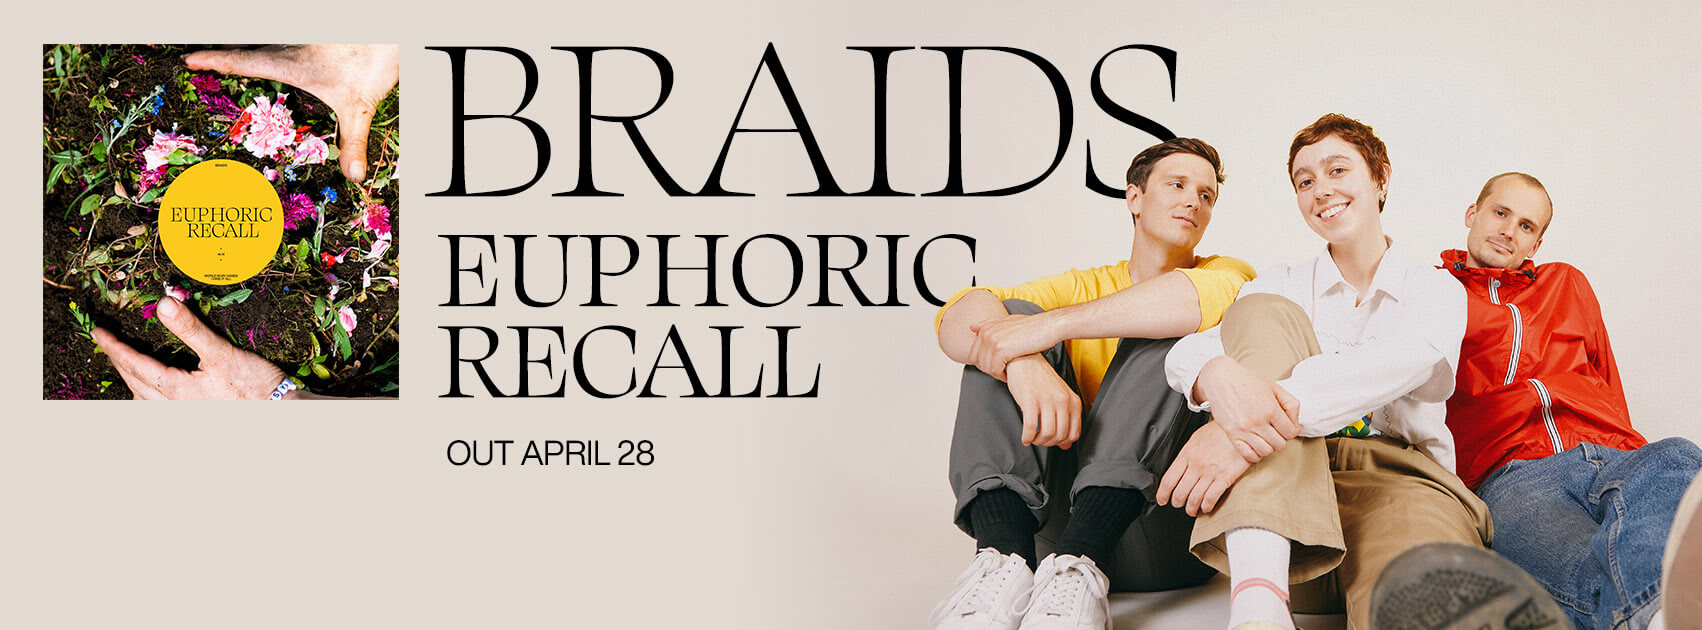 Braids-SCRWebsite-EN-April28